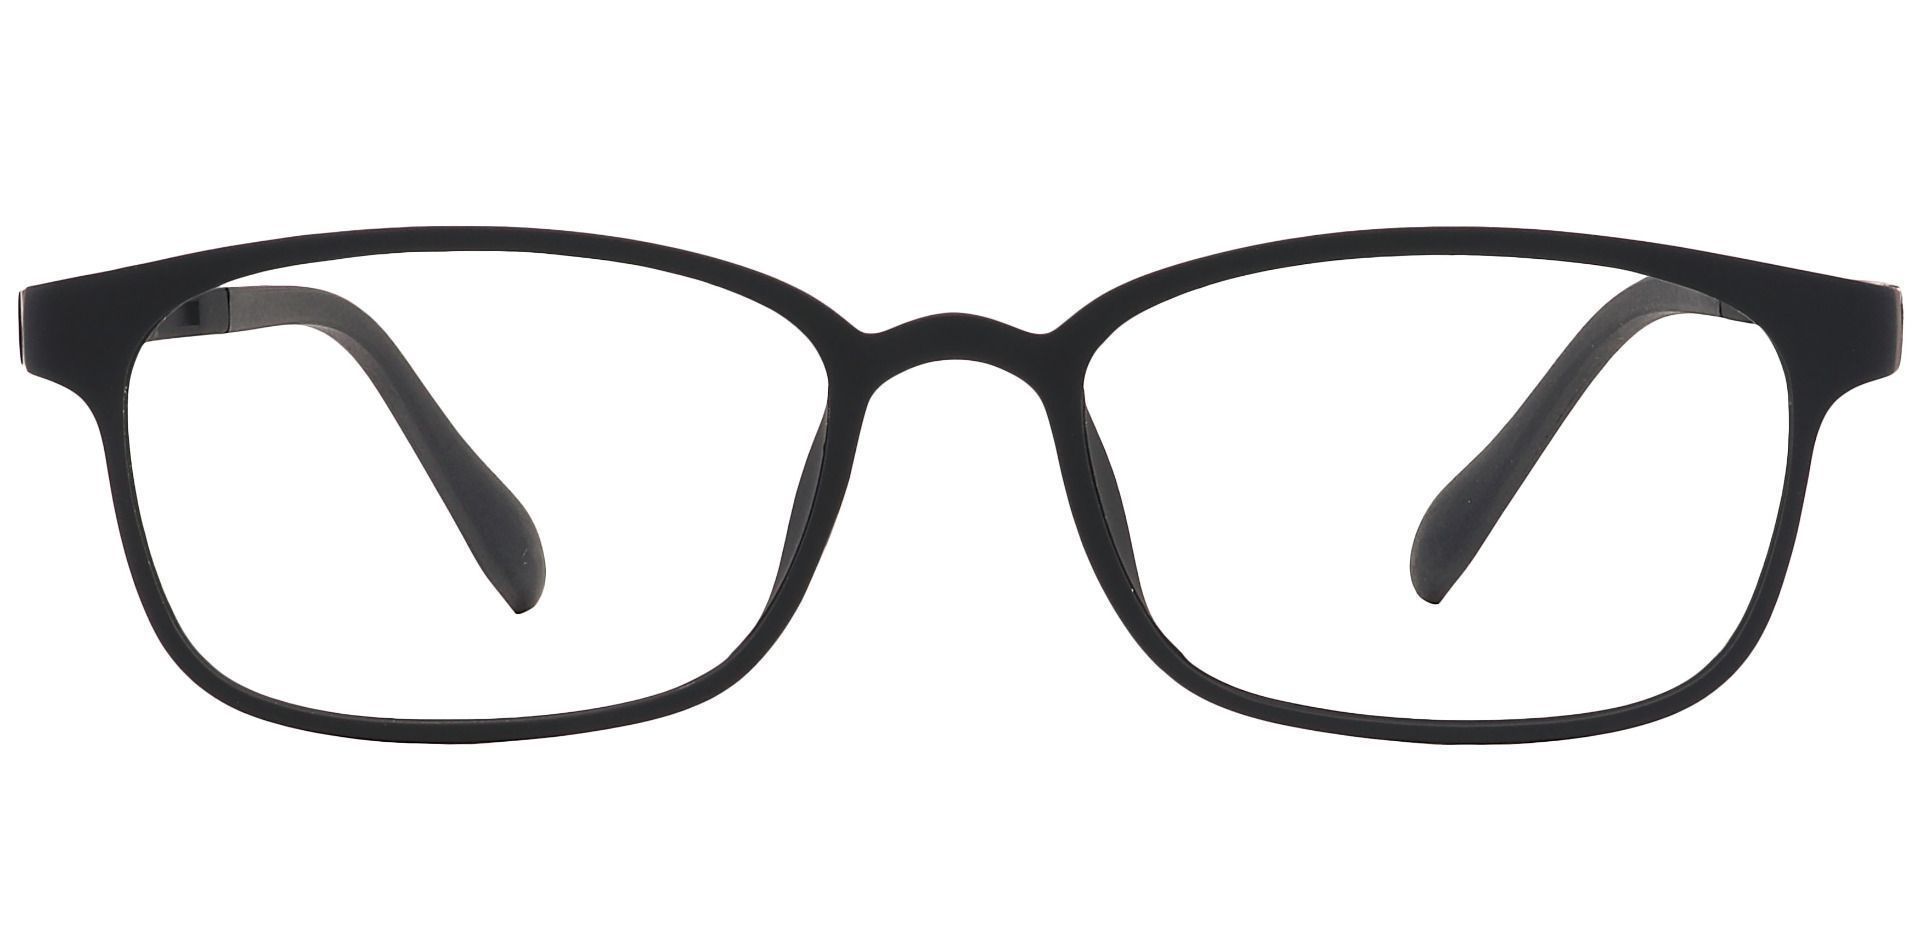 Mercer Rectangle Reading Glasses - Matte Black